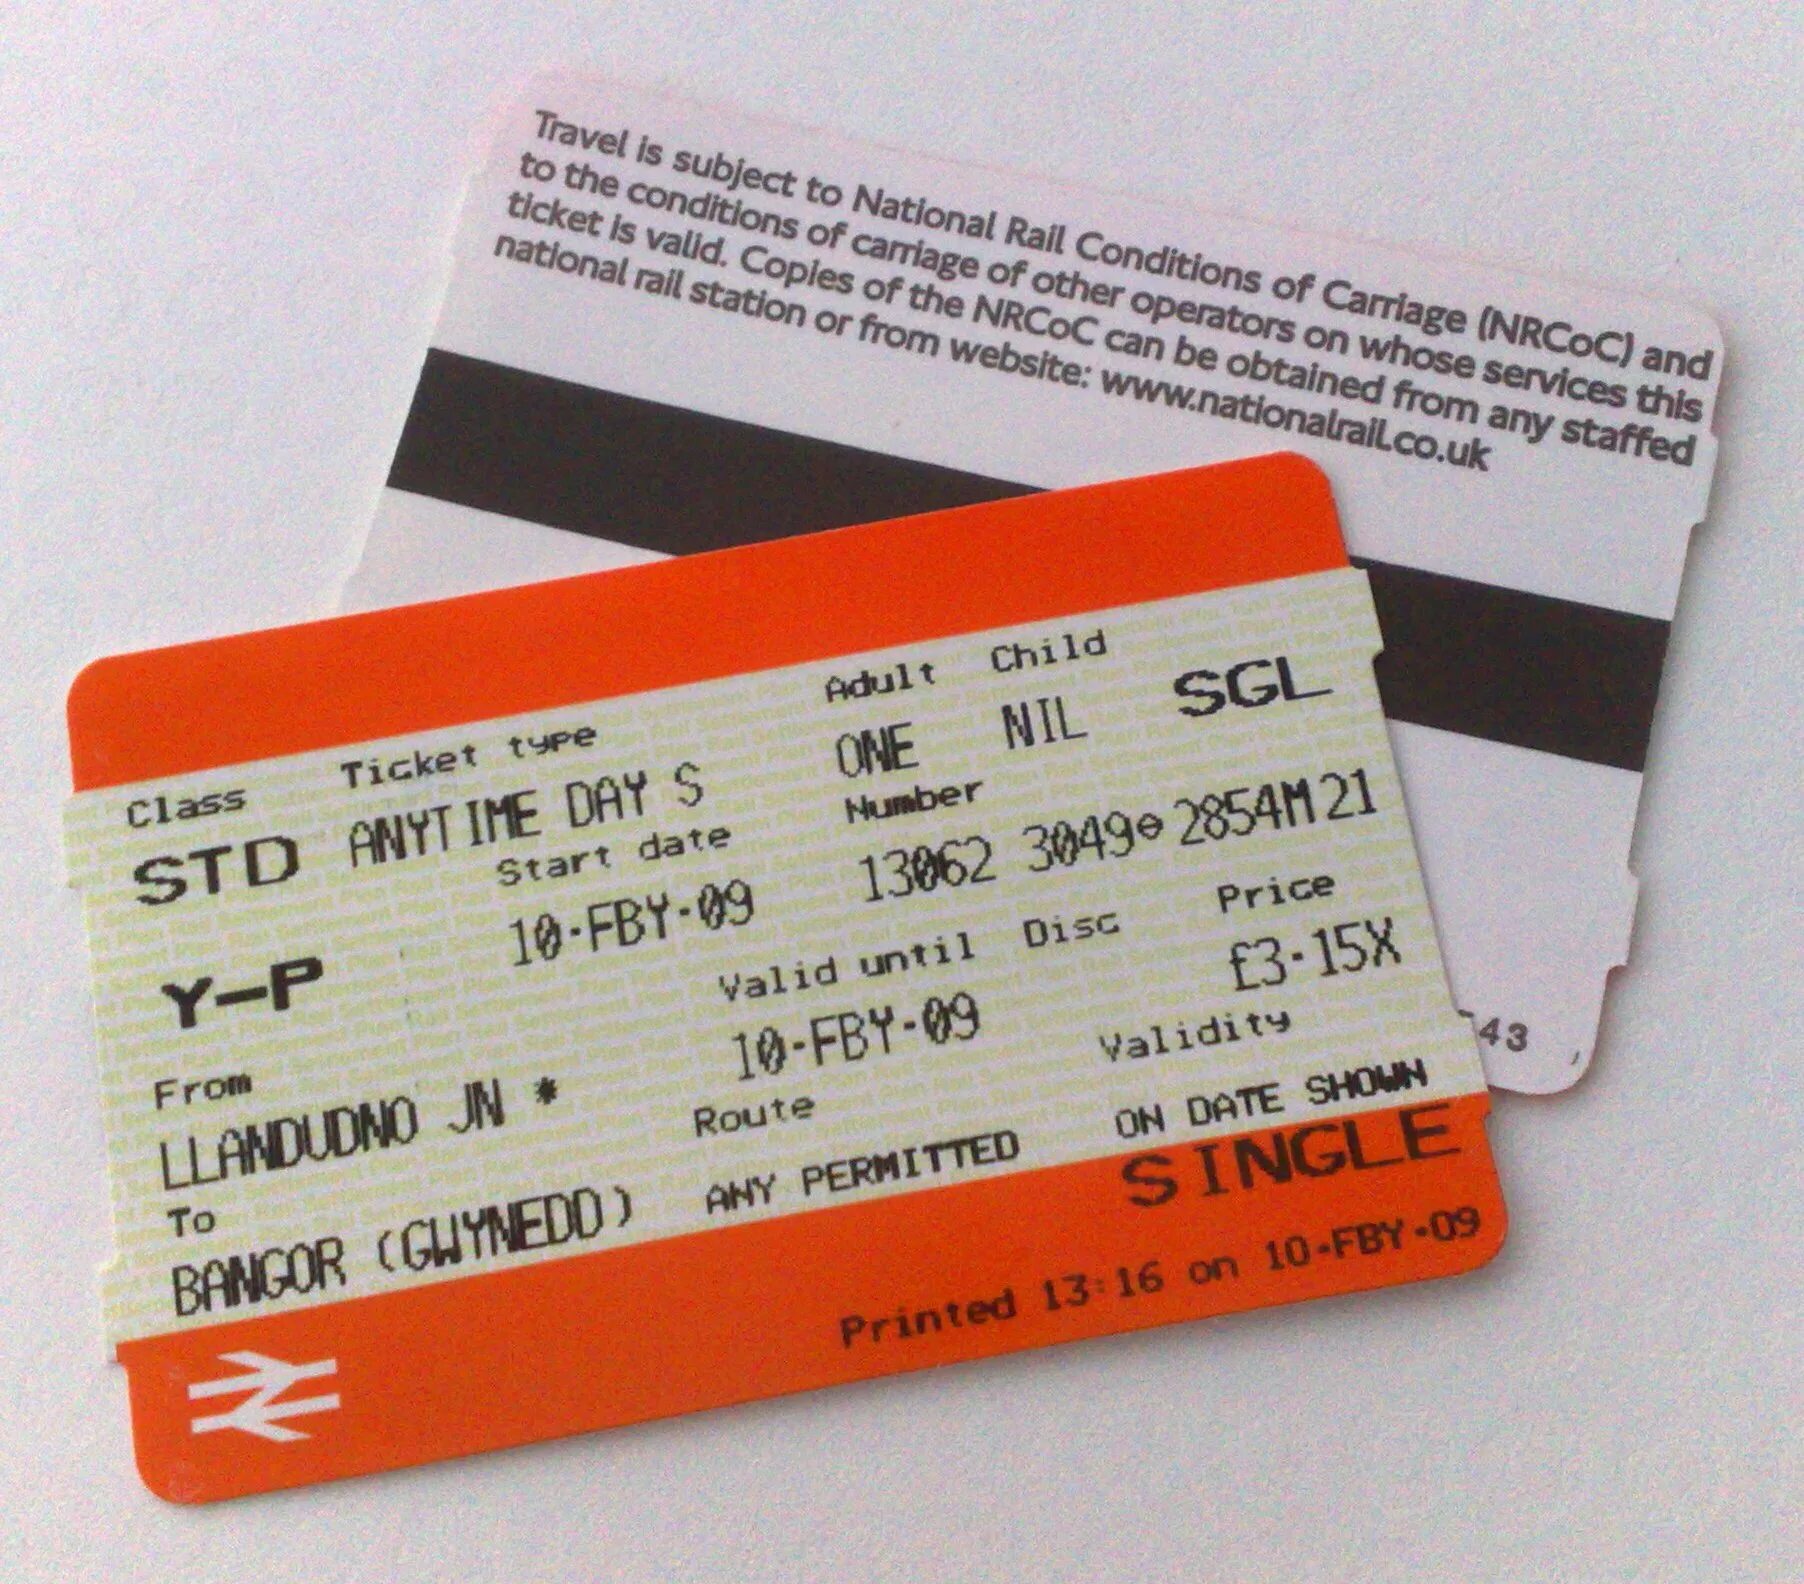 Valid start. Rail ticket. Билет ticket. Train tickets uk. Single ticket.